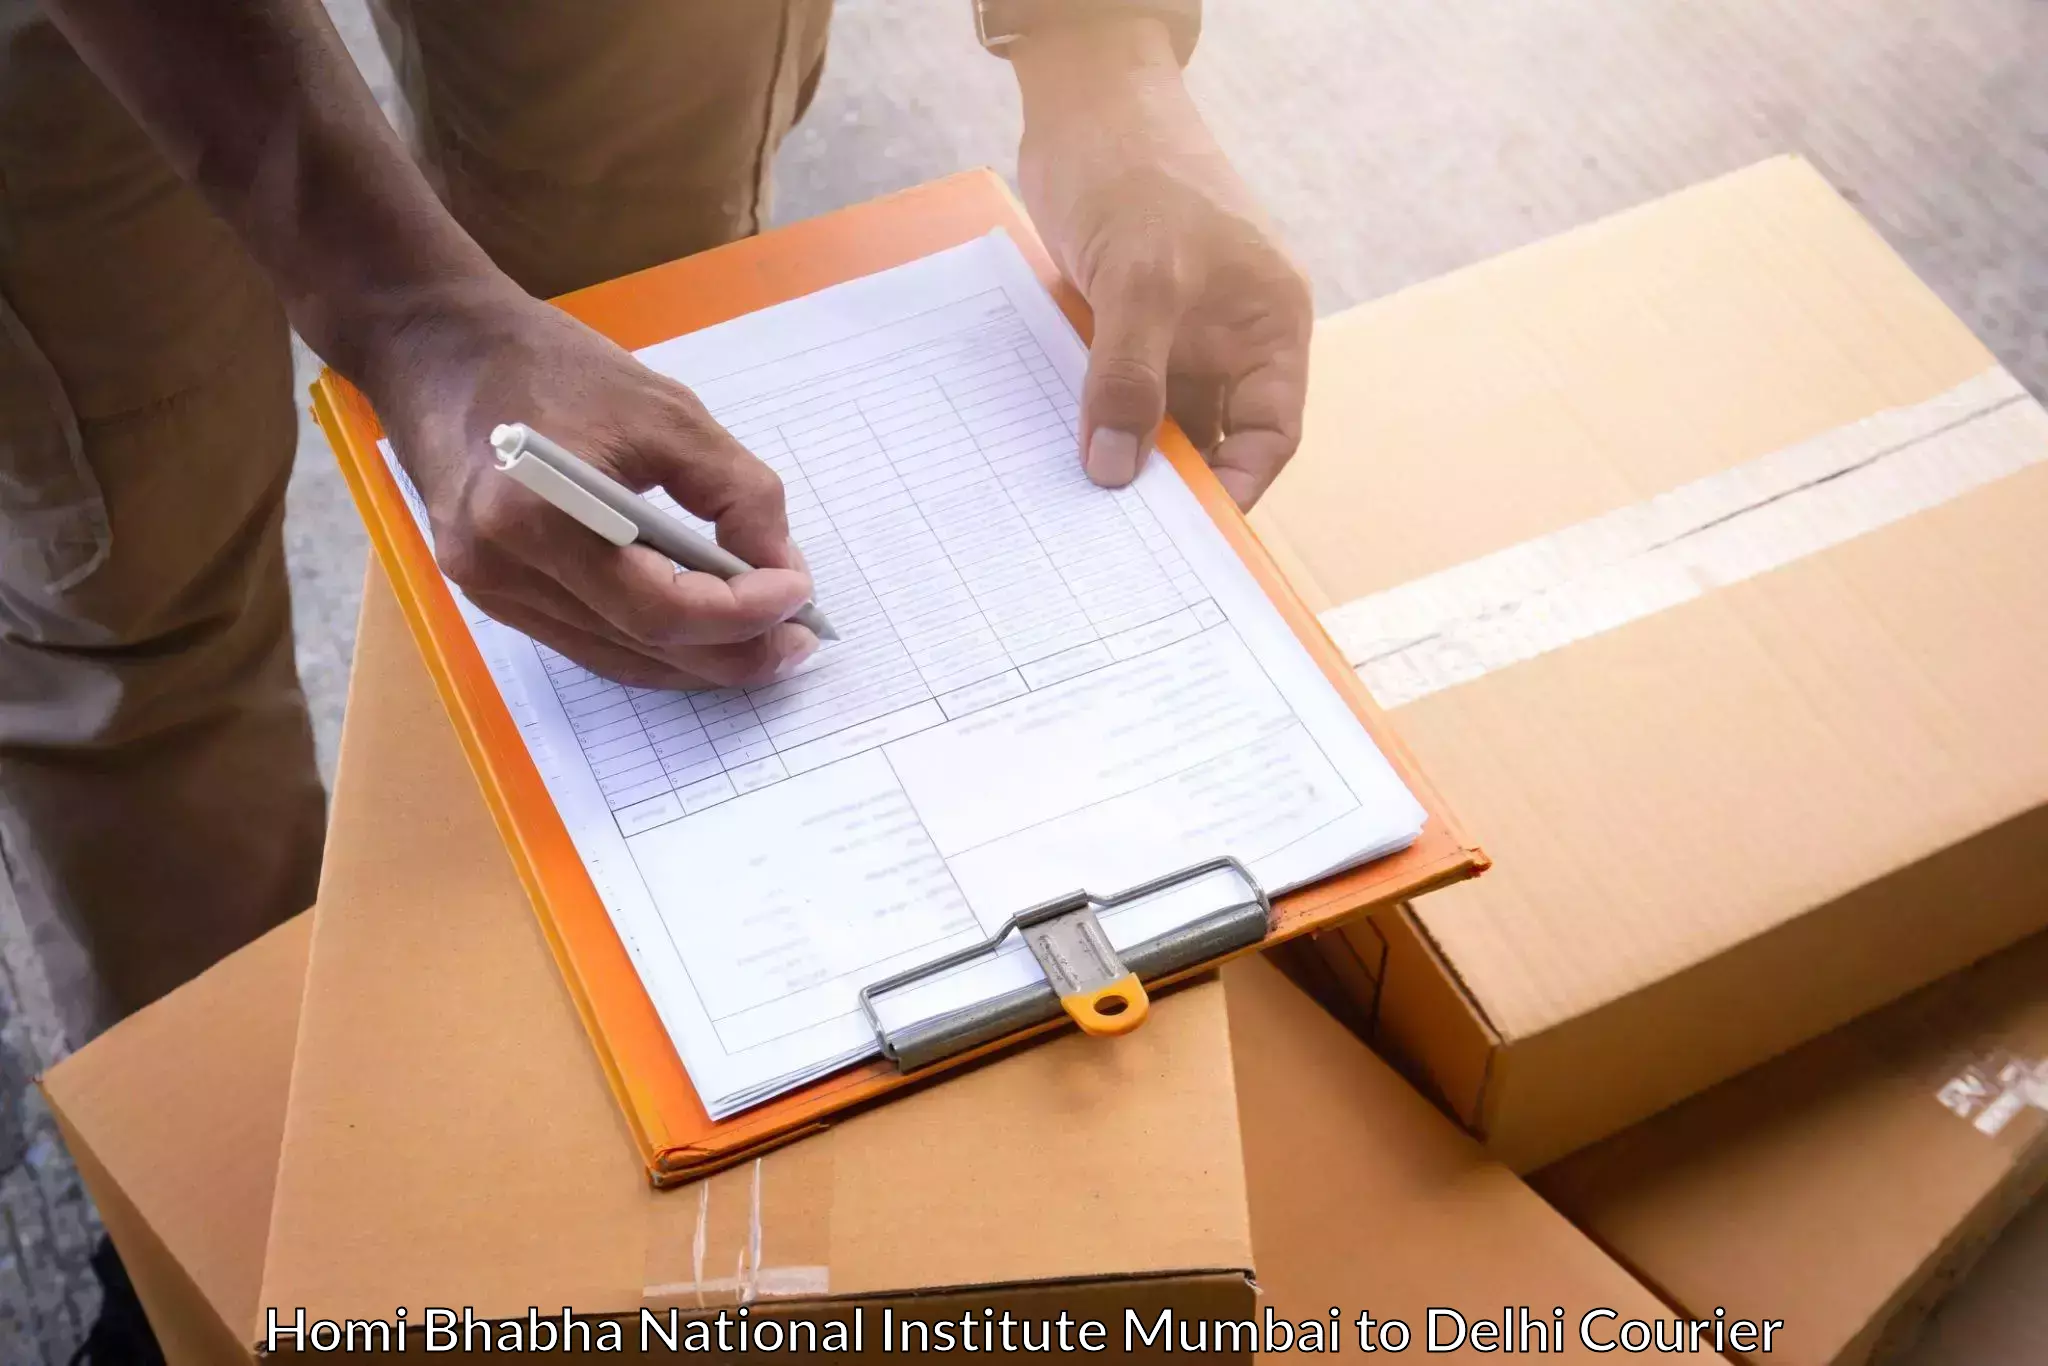 Specialized shipment handling Homi Bhabha National Institute Mumbai to Krishna Nagar